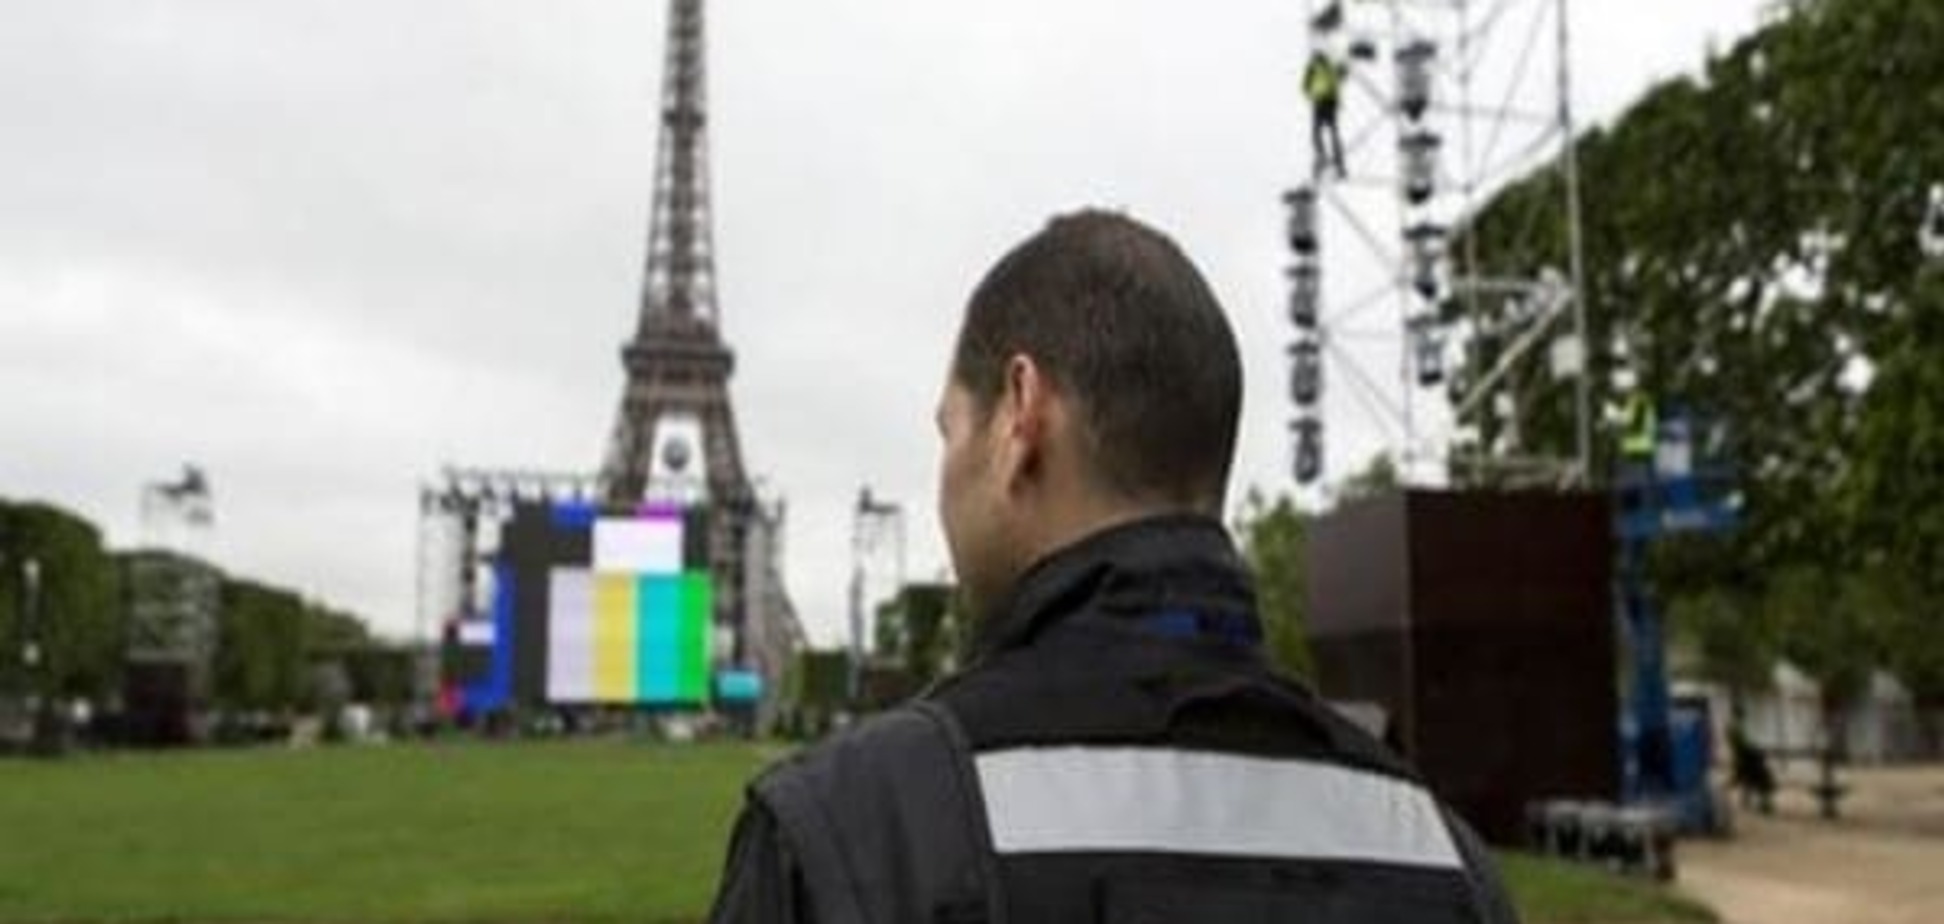 Евро-2016 на фоне угрозы терактов: Франция предприняла беспрецедентные меры безопасности